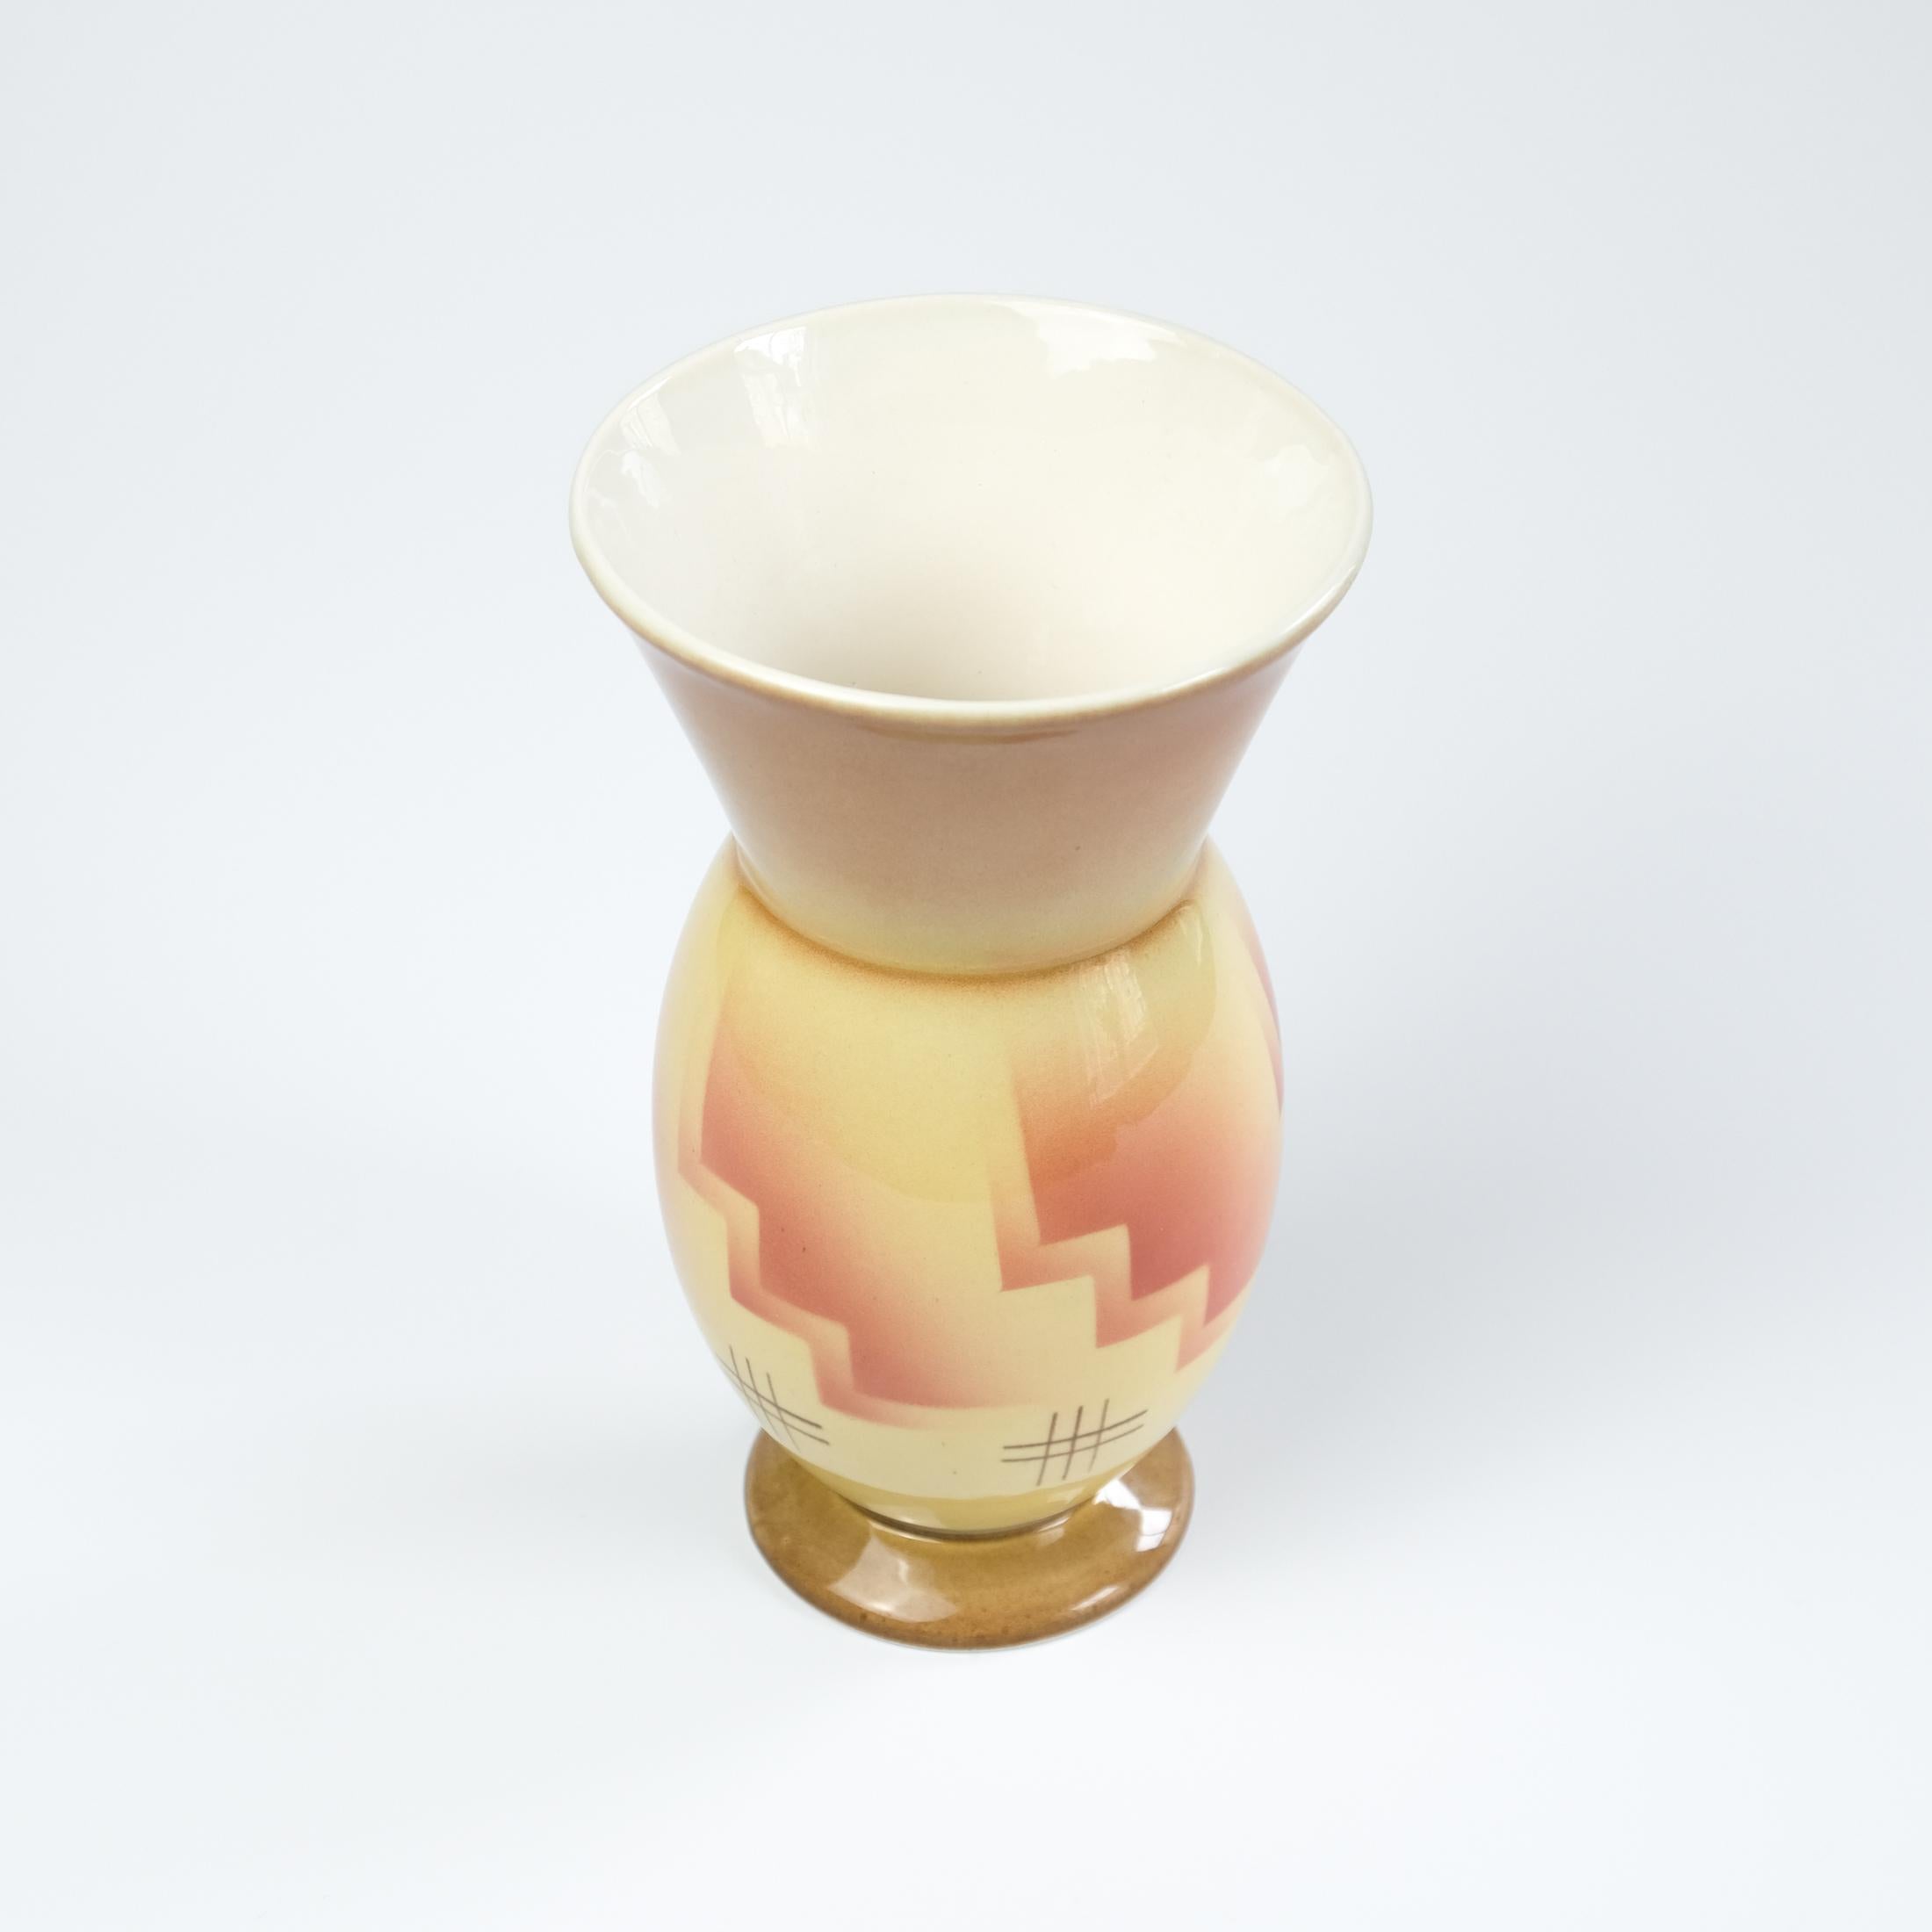 Nous proposons à la vente un vase en céramique de style moderniste allemand, Bauhaus, de type 